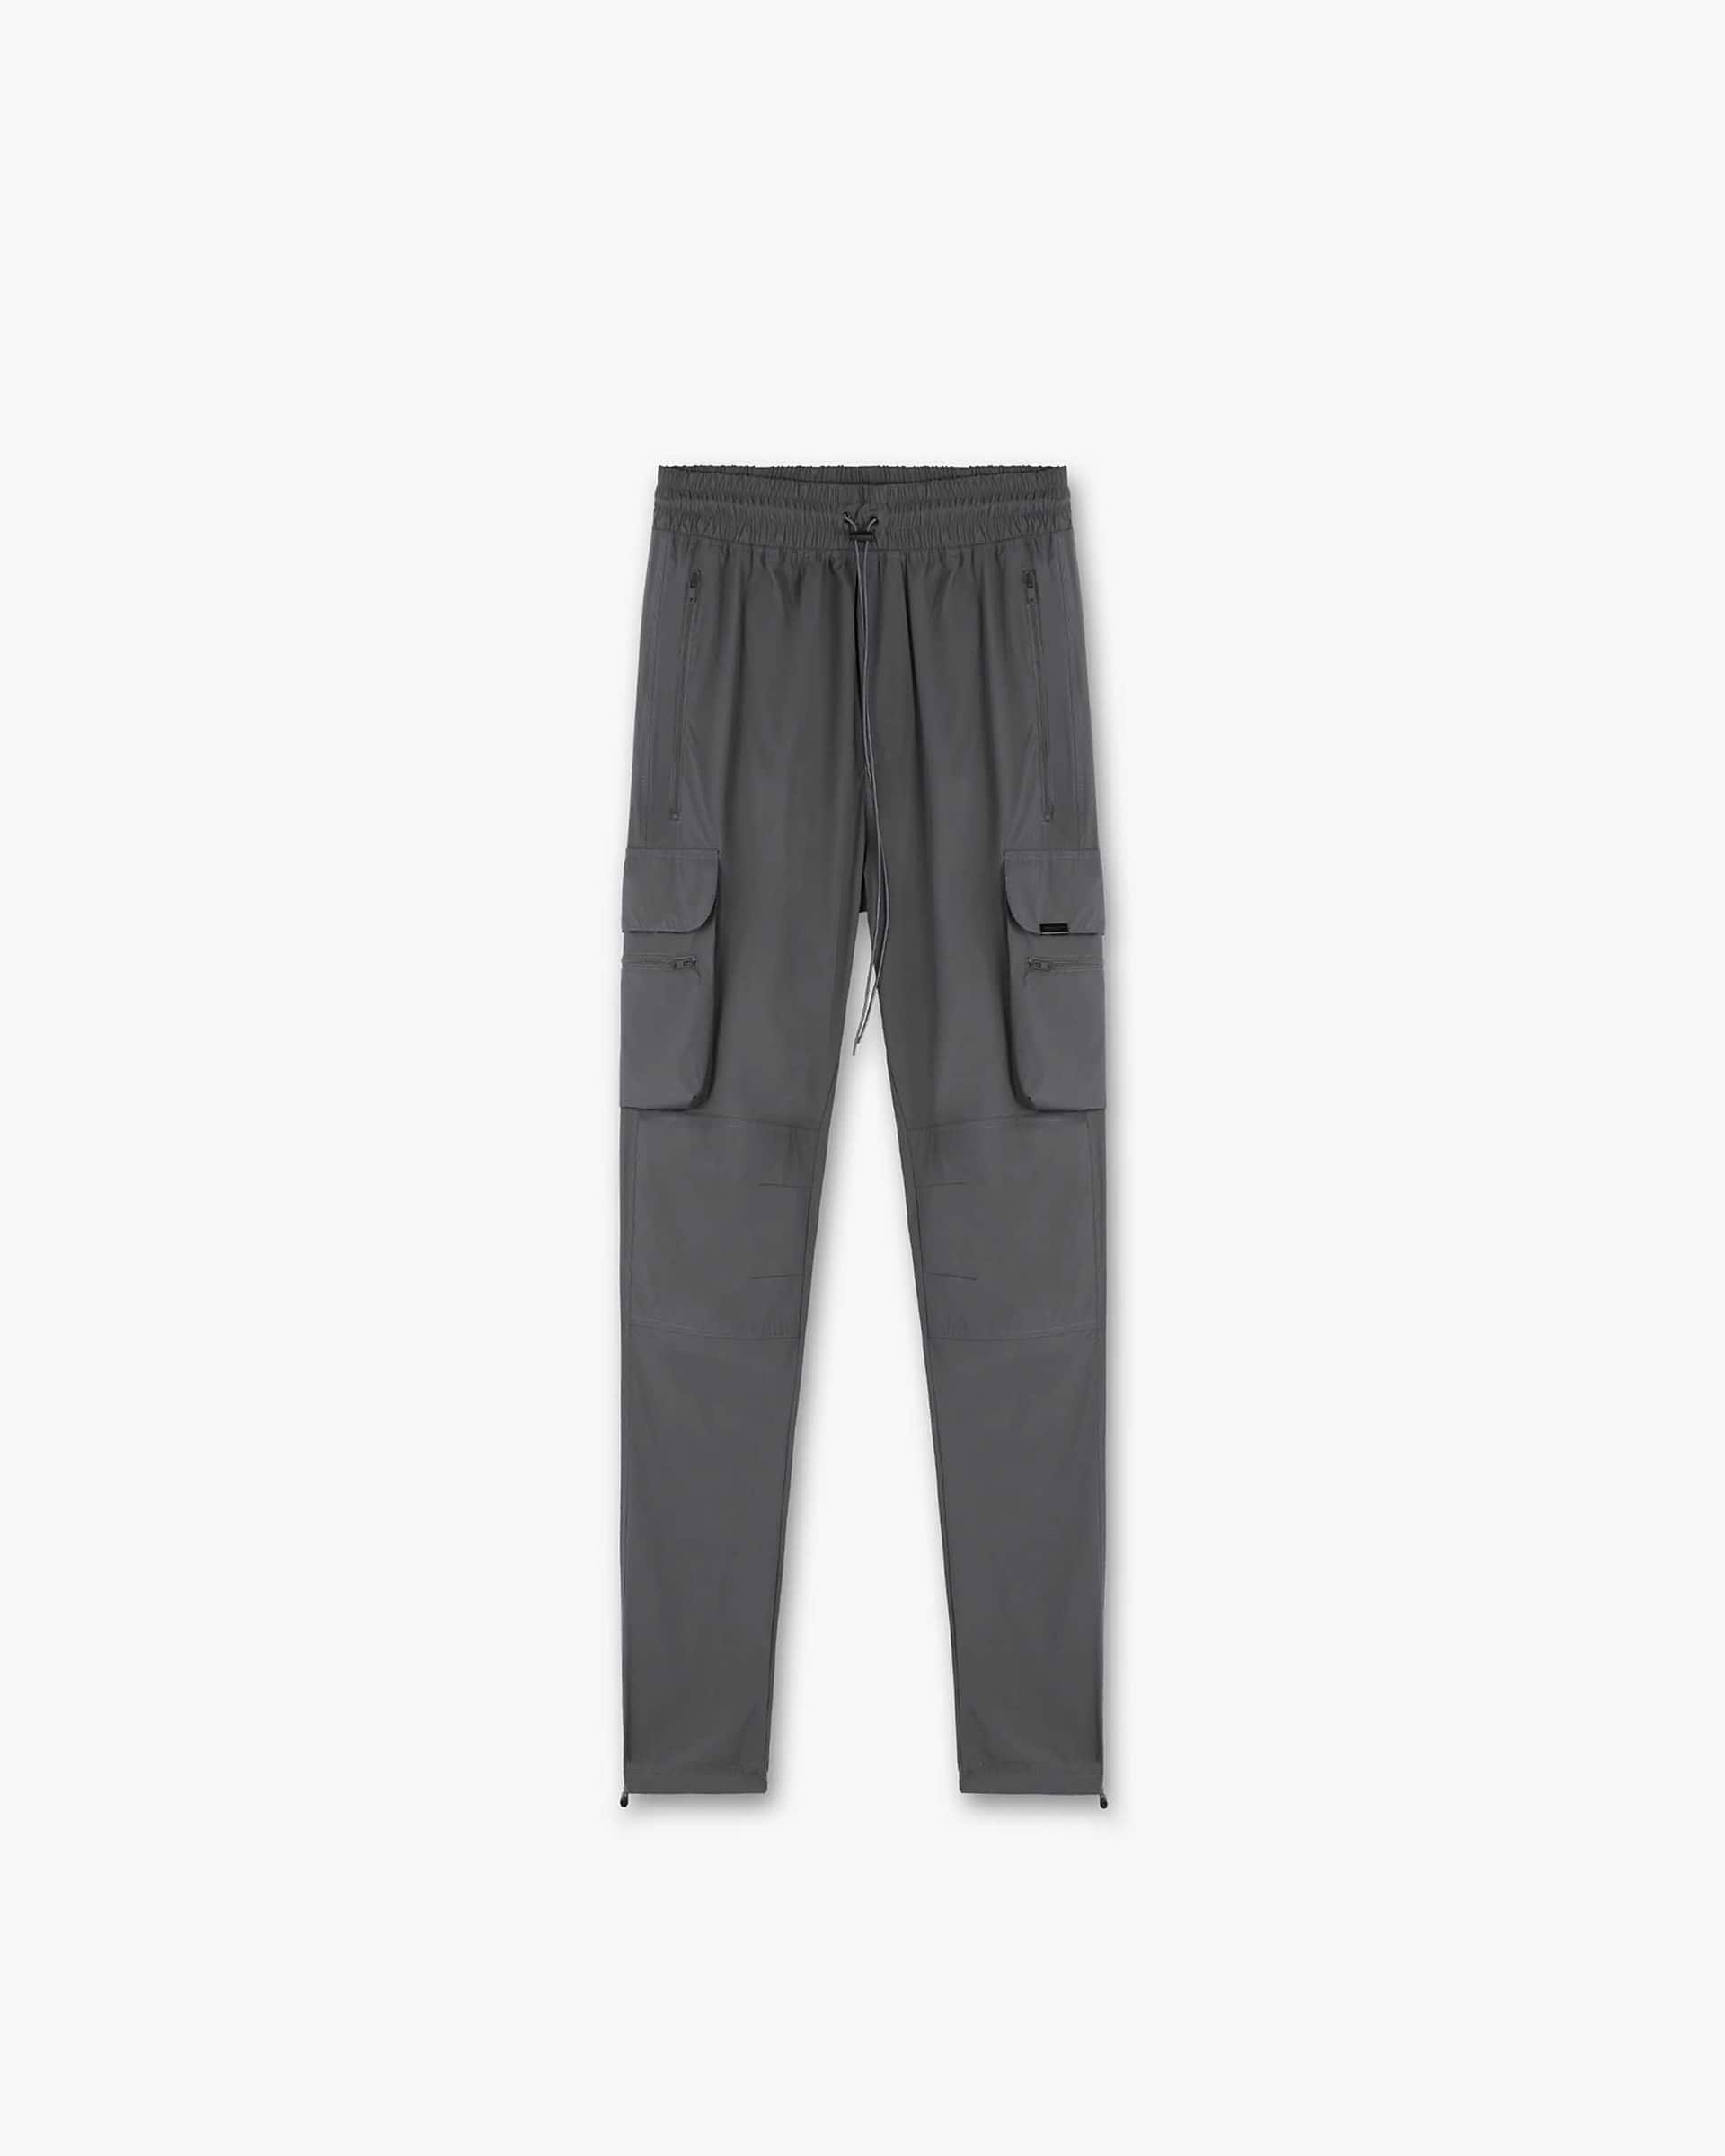 247 Pant | Grey Pants 247 | Represent Clo